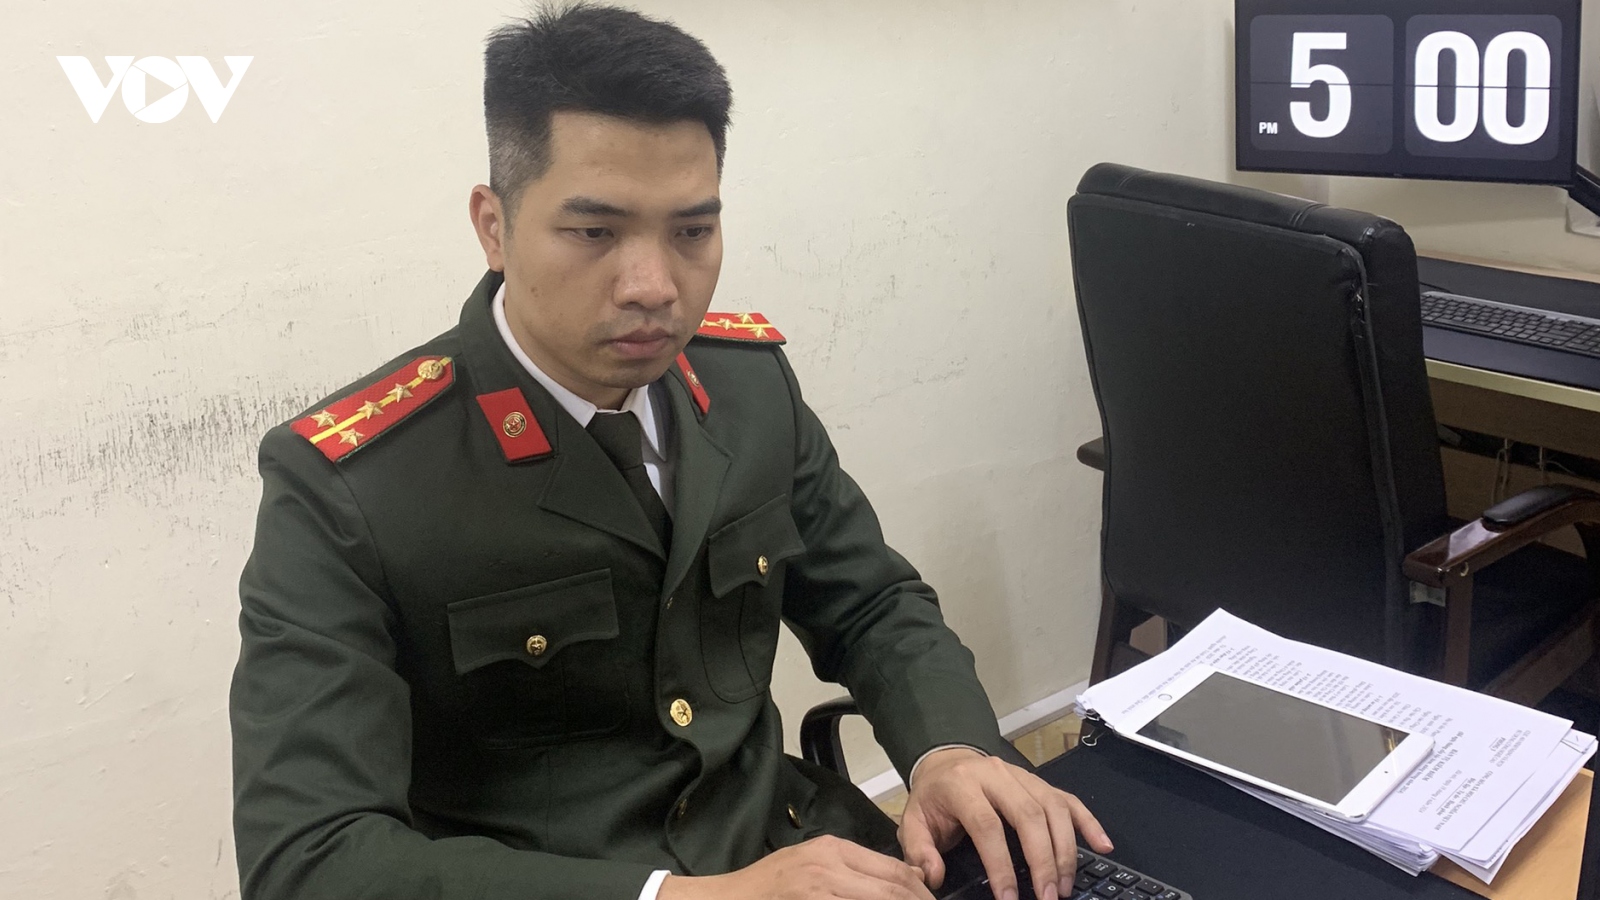 Gương mặt trẻ Việt Nam tiêu biểu: Đại úy công an phá nhiều chuyên án trên mạng